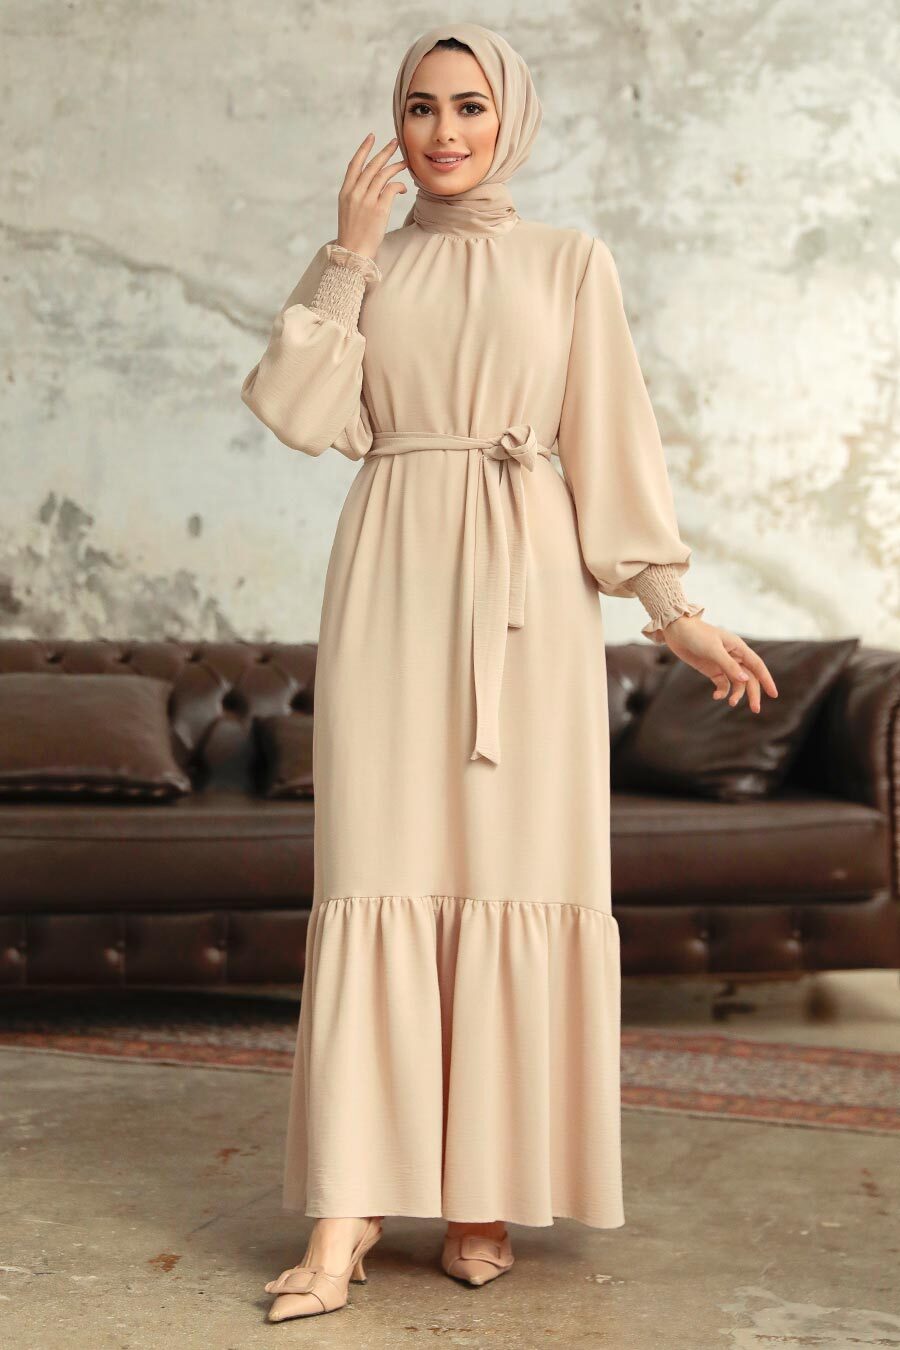 Neva Style - Etek Ucu Volanlı Krem Tesettür Elbise 5972KR